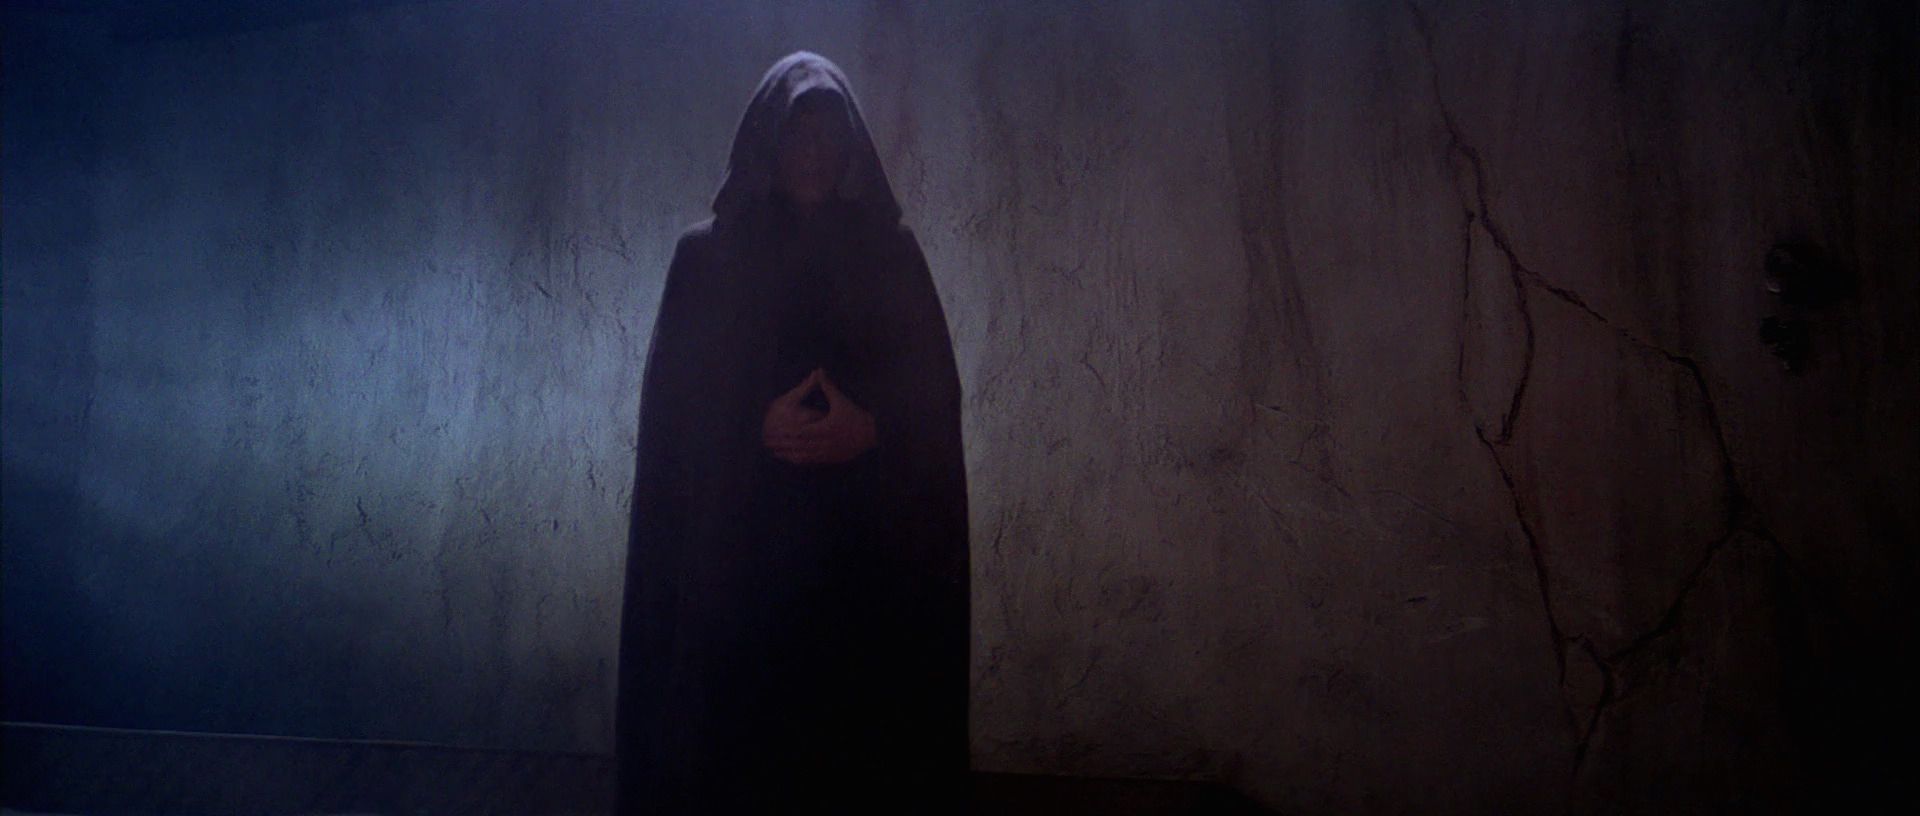 Return of the Jedi Luke Skywalker